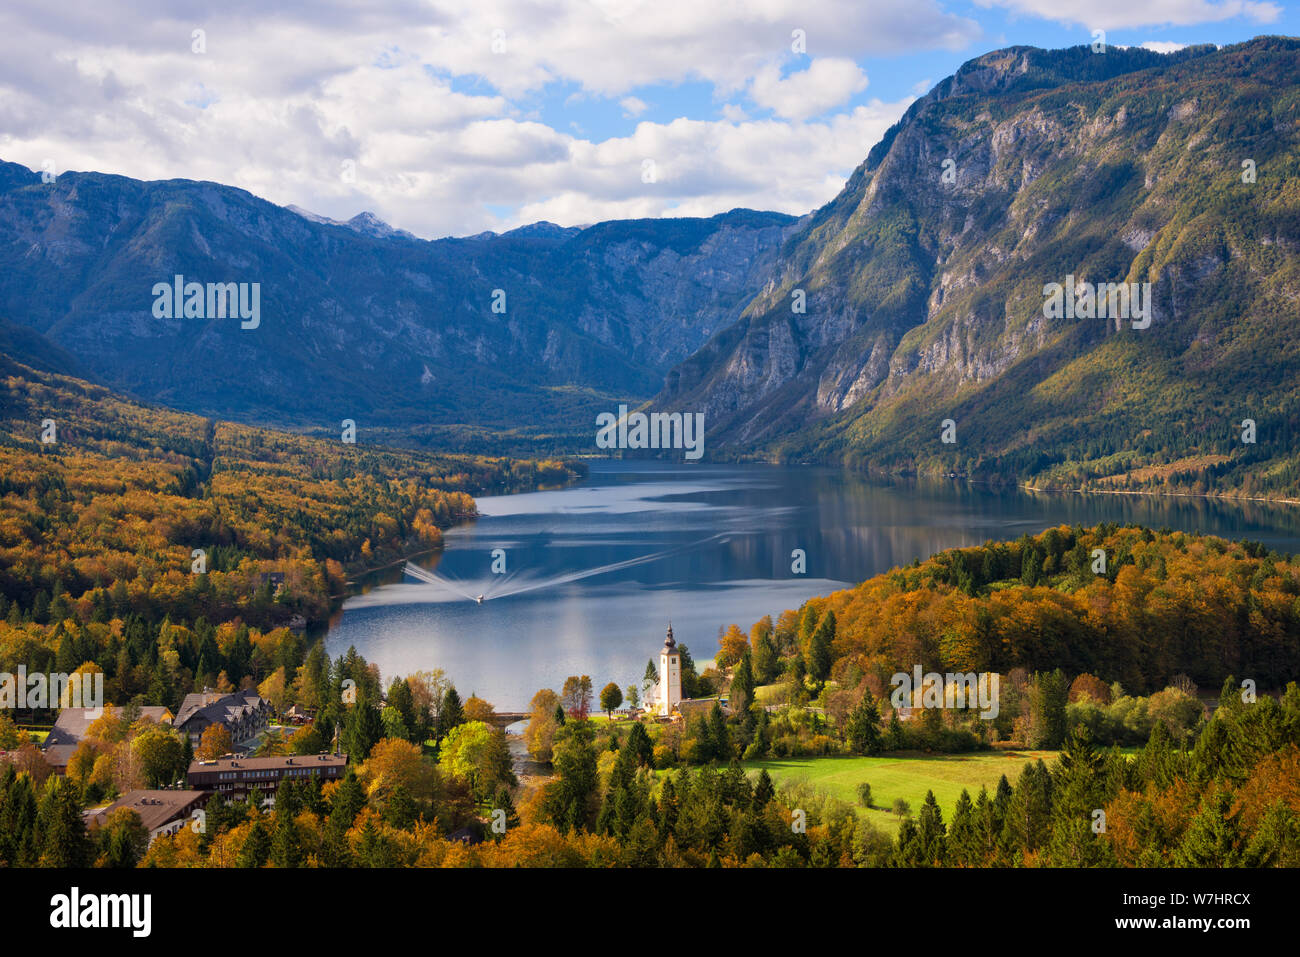 Un ferry vers la ville de Ribčev Laz près du lac Bohinj et arbres en automne les couleurs et les Alpes Juliennes montagnes dans un paysage d'automne en Slovénie. Banque D'Images